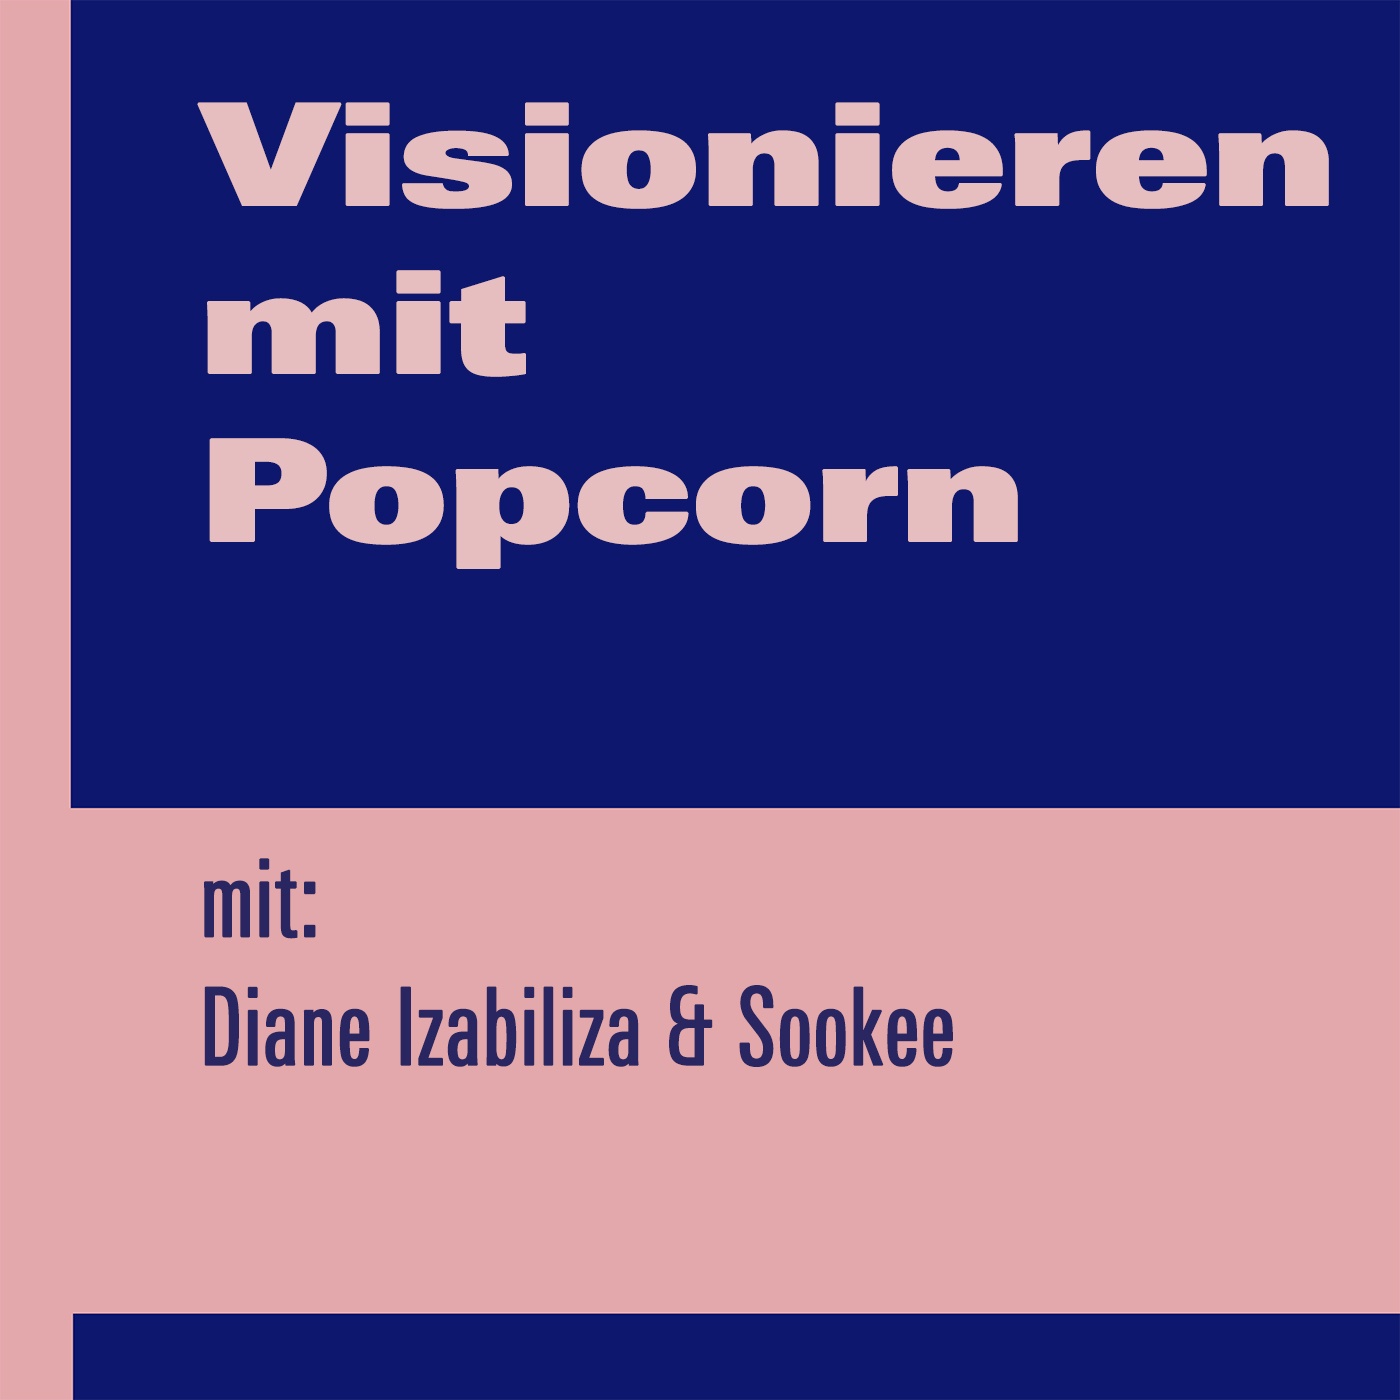 Visionieren mit Popcorn